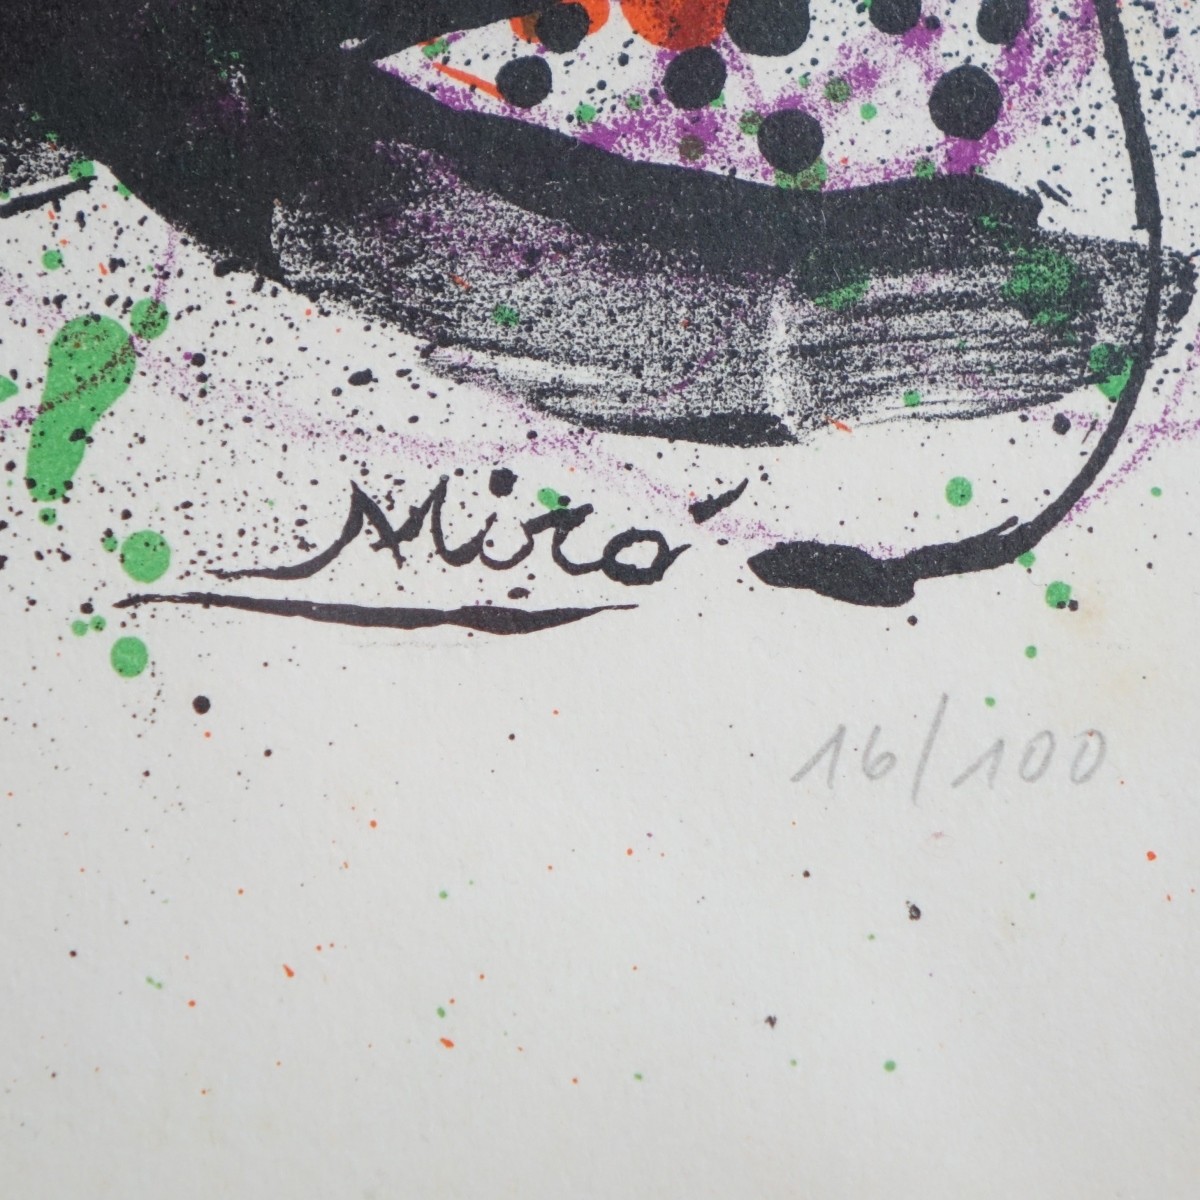 Joan Miro, Spanish (1893 - 1983)